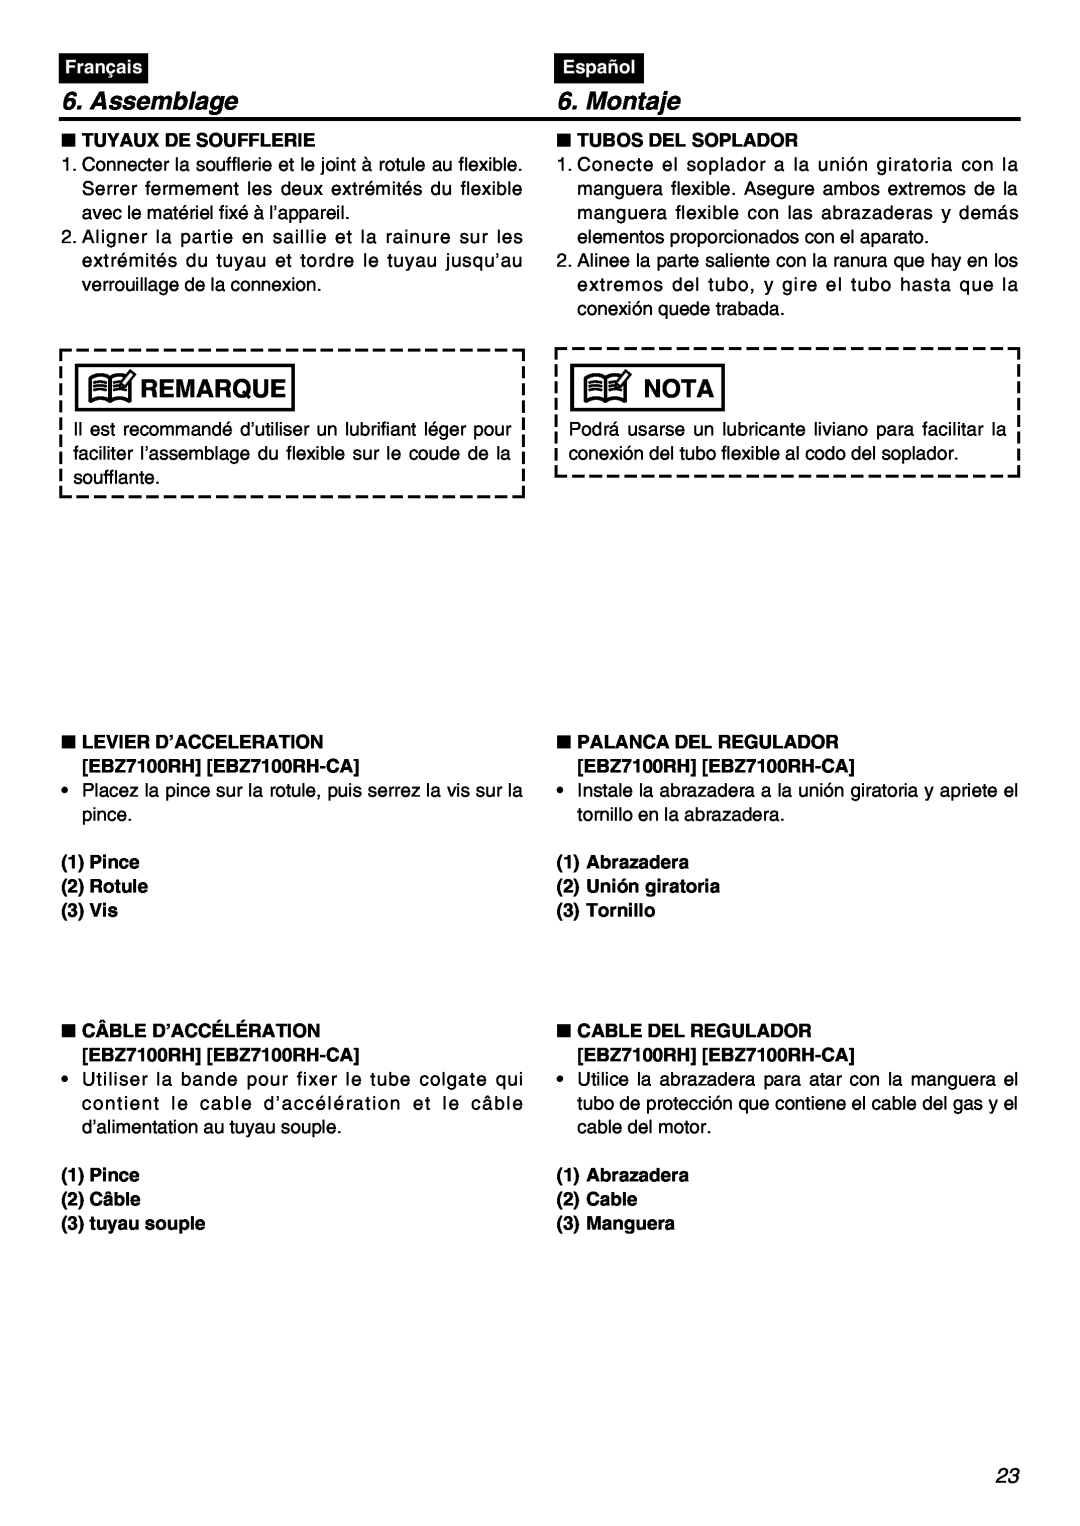 Zenoah EBZ7100-CA manual Assemblage, Montaje, Remarque, Nota, Français, Español, Tuyaux De Soufflerie, Tubos Del Soplador 